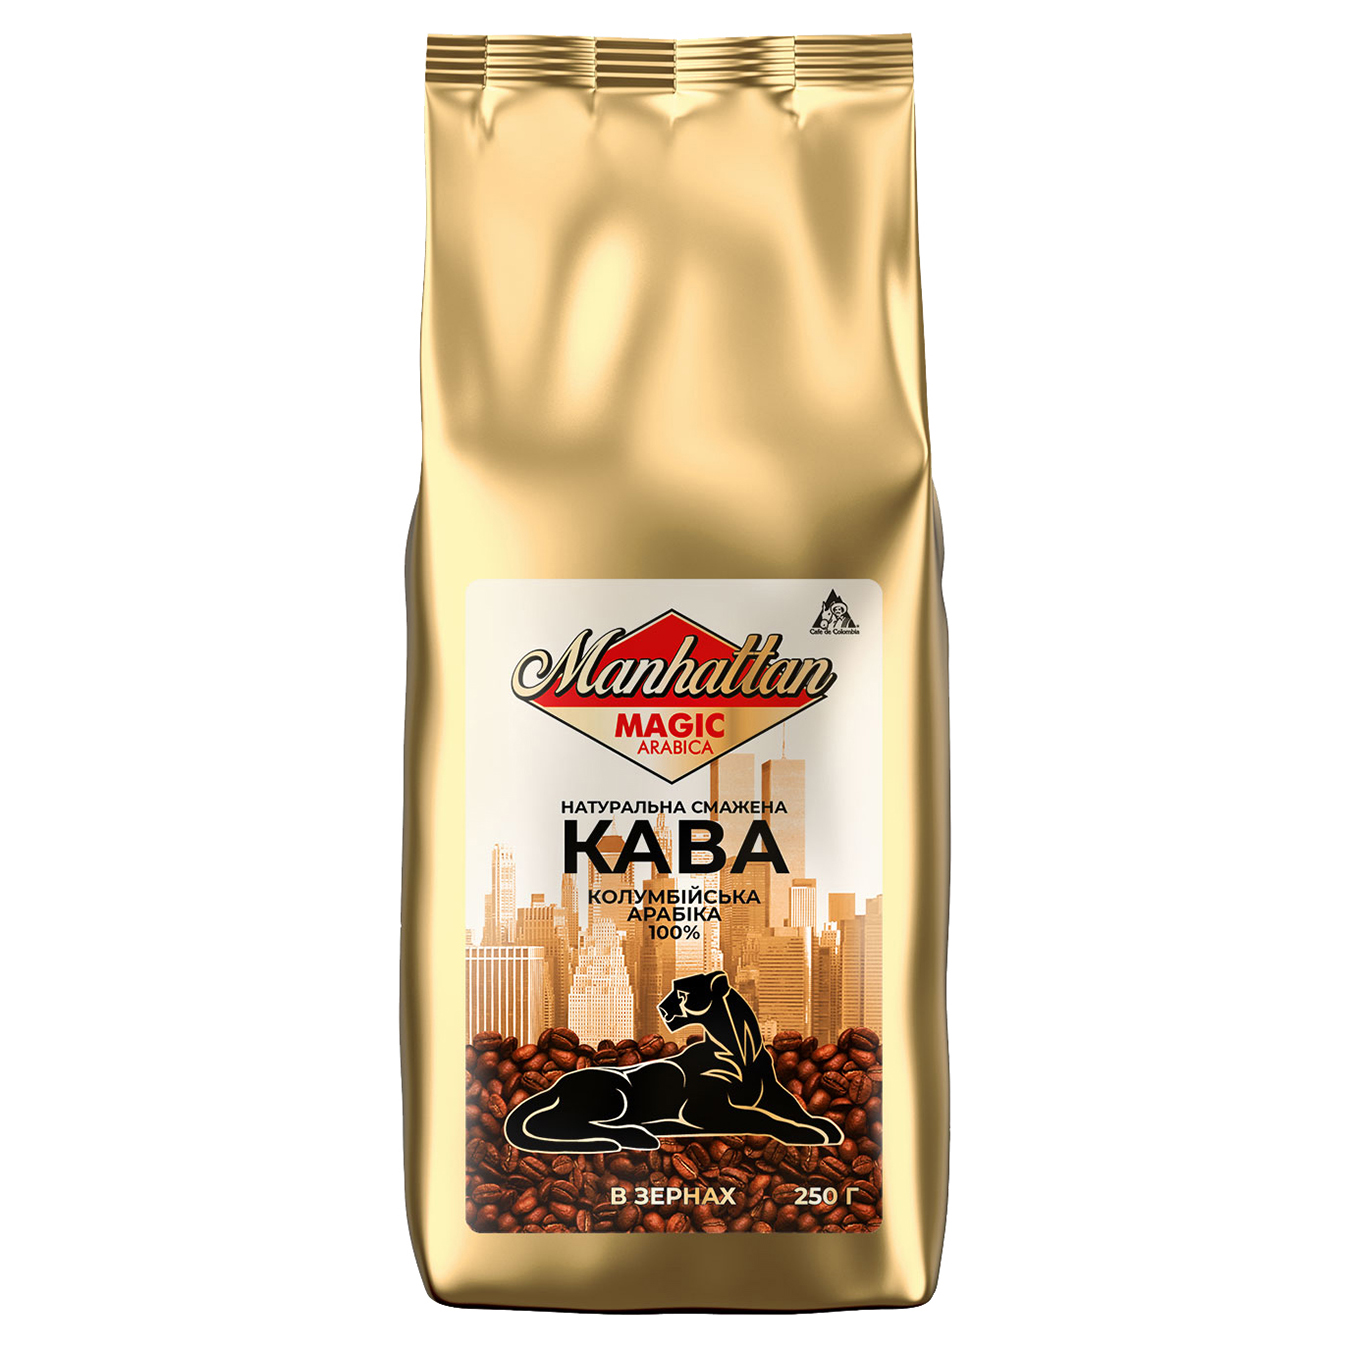 Manhattan Arabica Natural Roasted Coffee Beans 250g